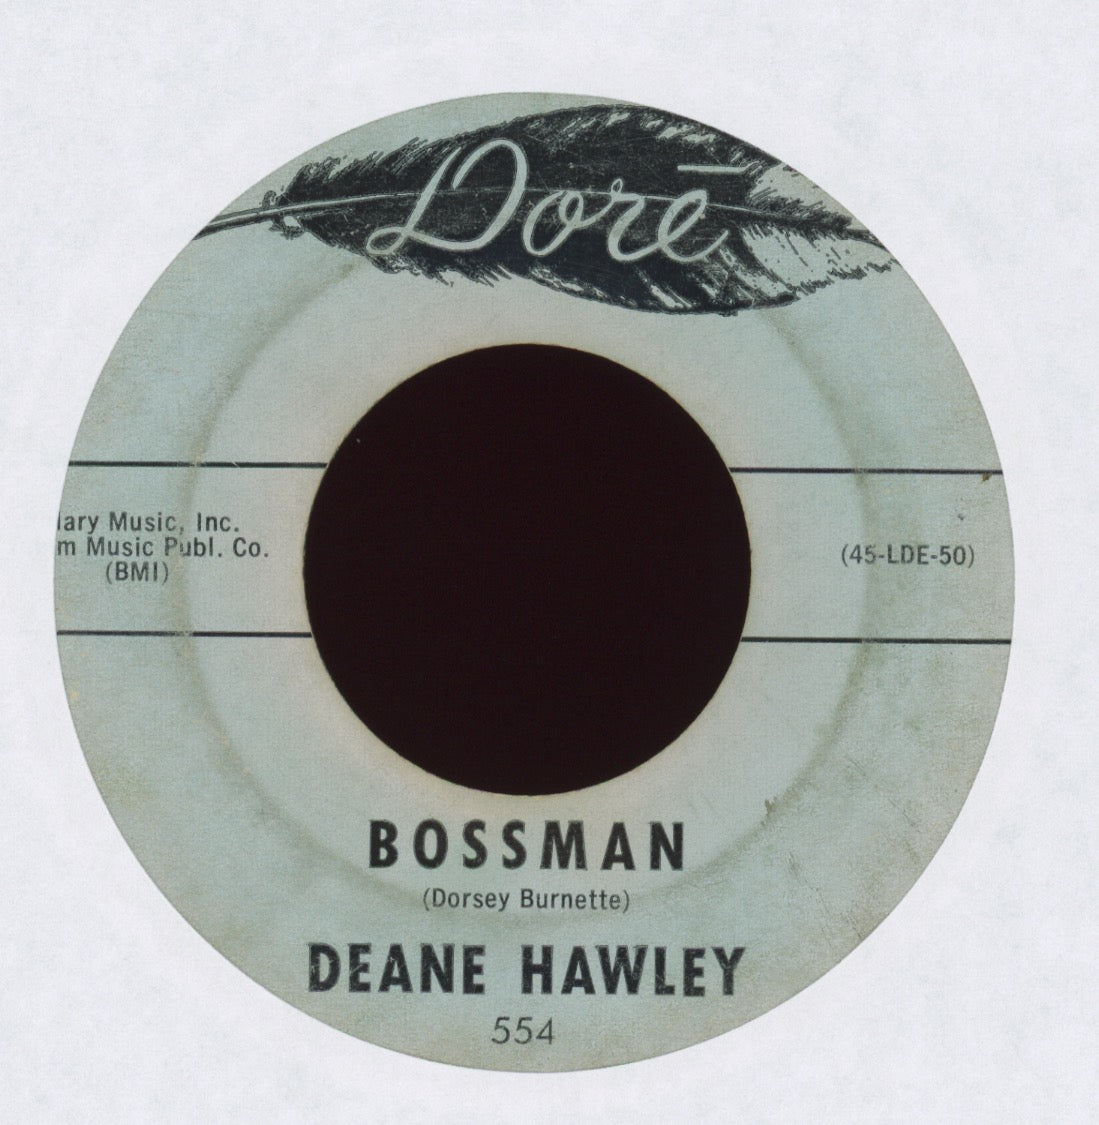 Deane Hawley - Bossman on Dore